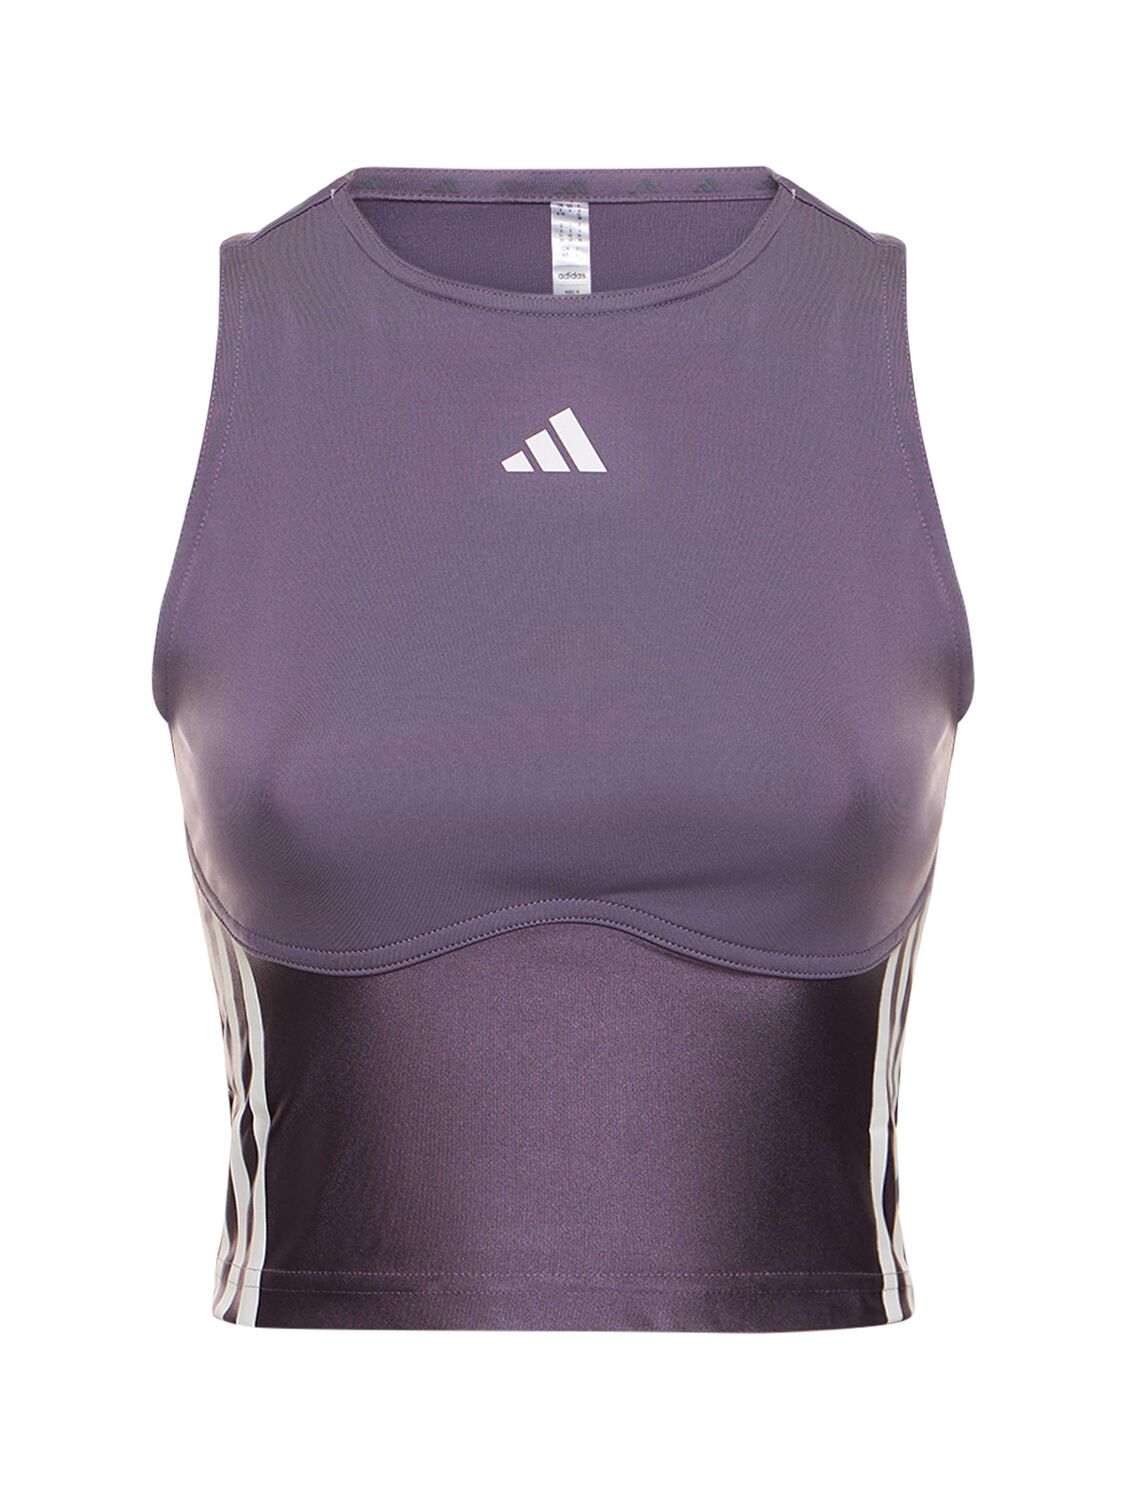 Adidas Originals Hyperglam背心 In Purple